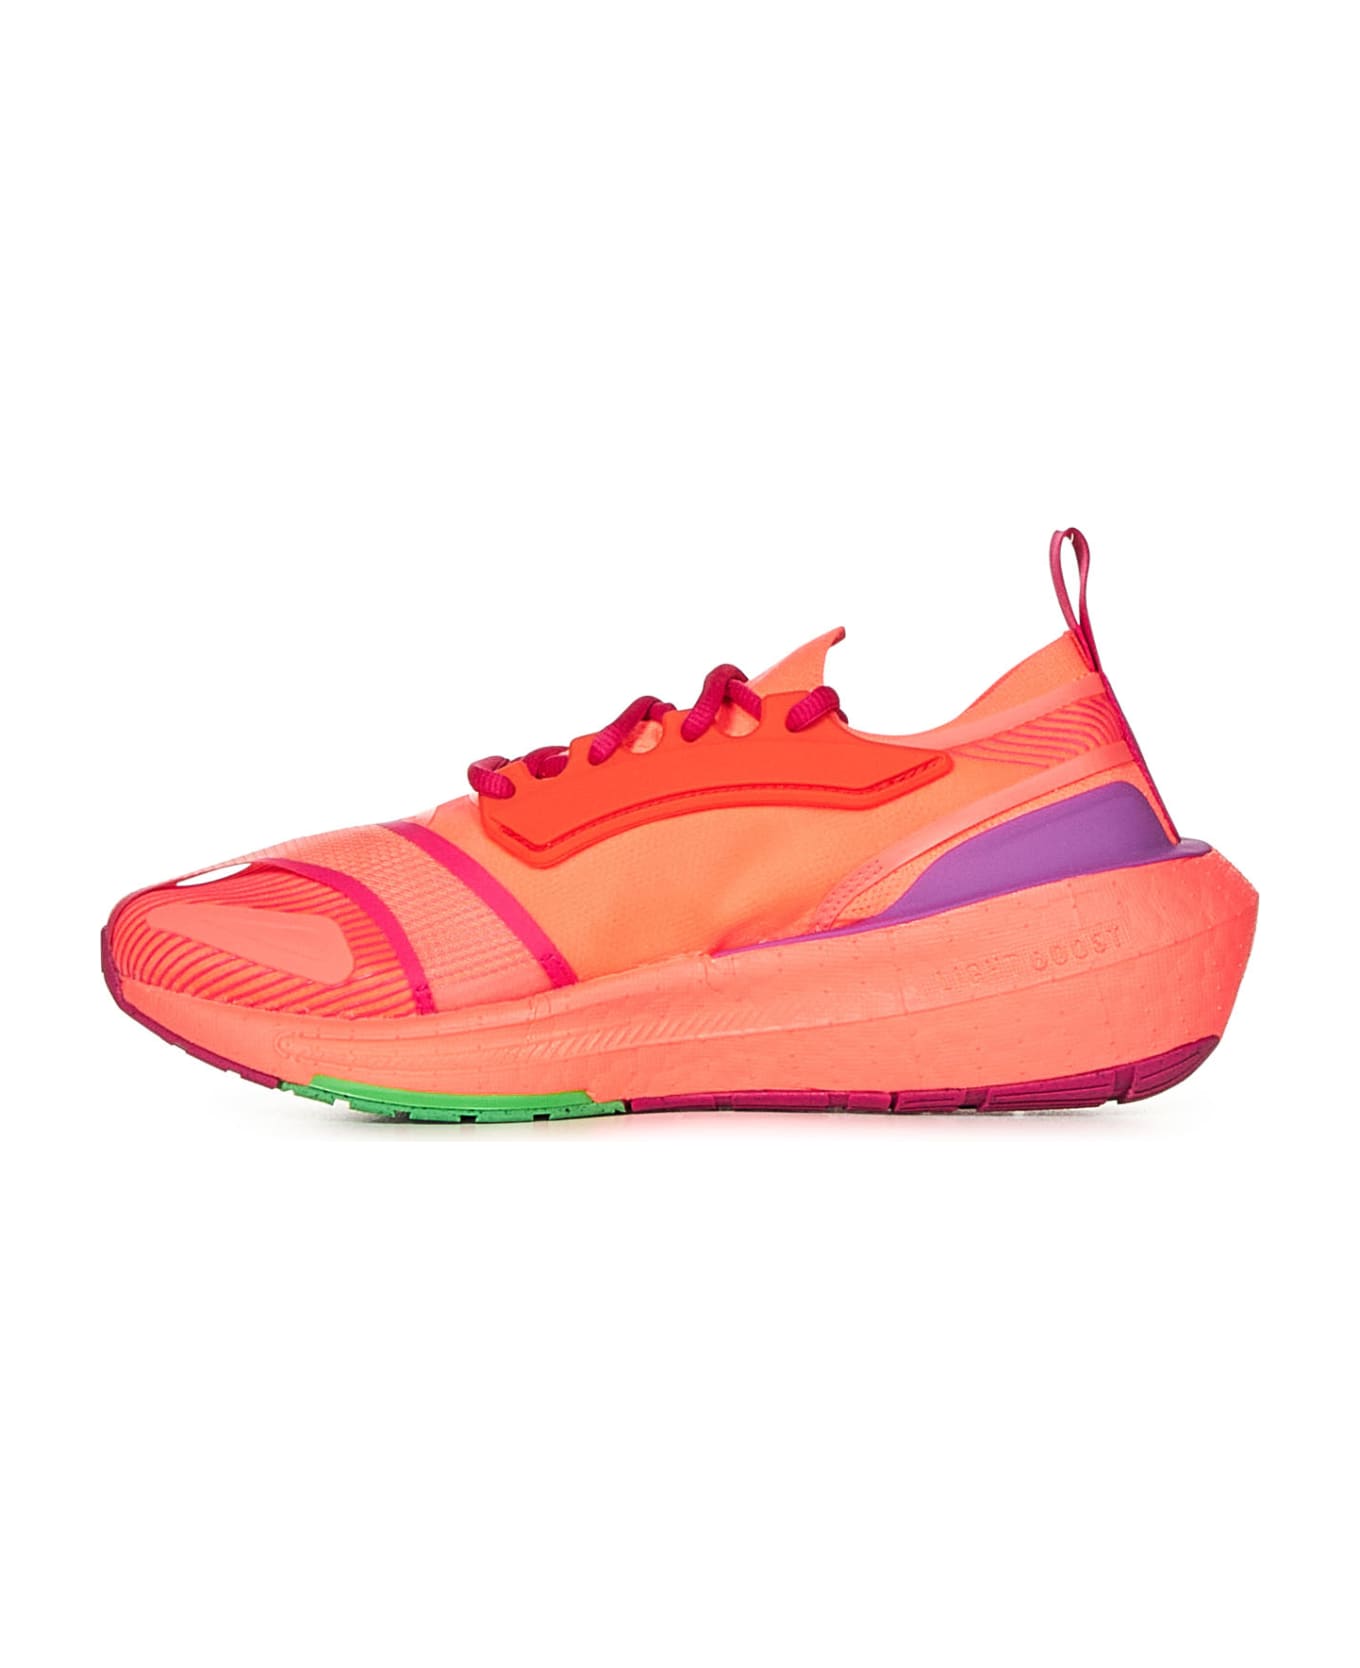 Adidas by Stella McCartney Ultraboost Light Sneakers - Turbo